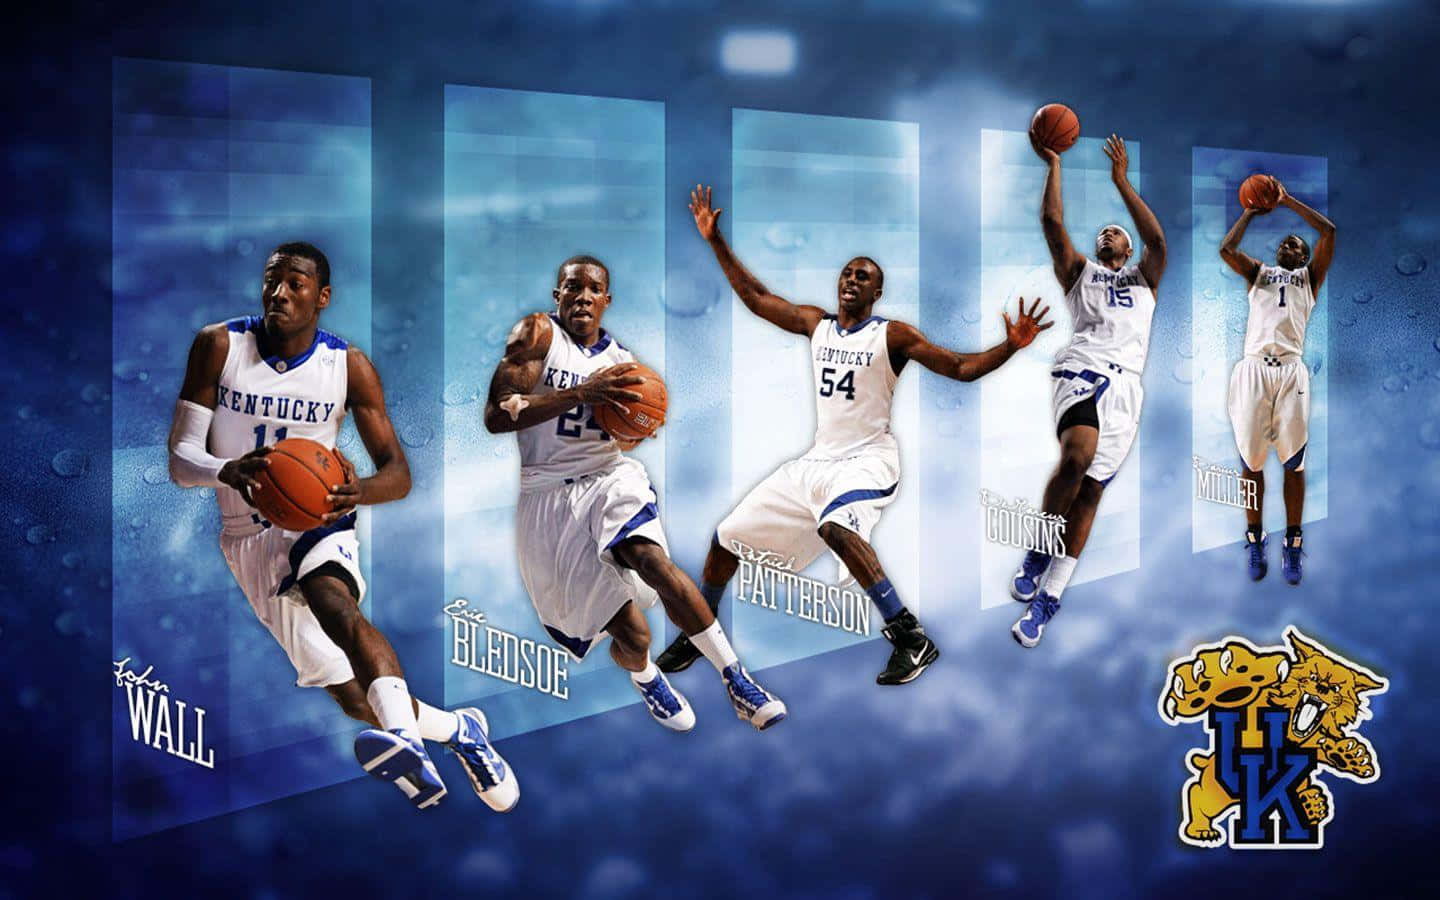 Kentuckywildcats Basketbolltapeter. Wallpaper